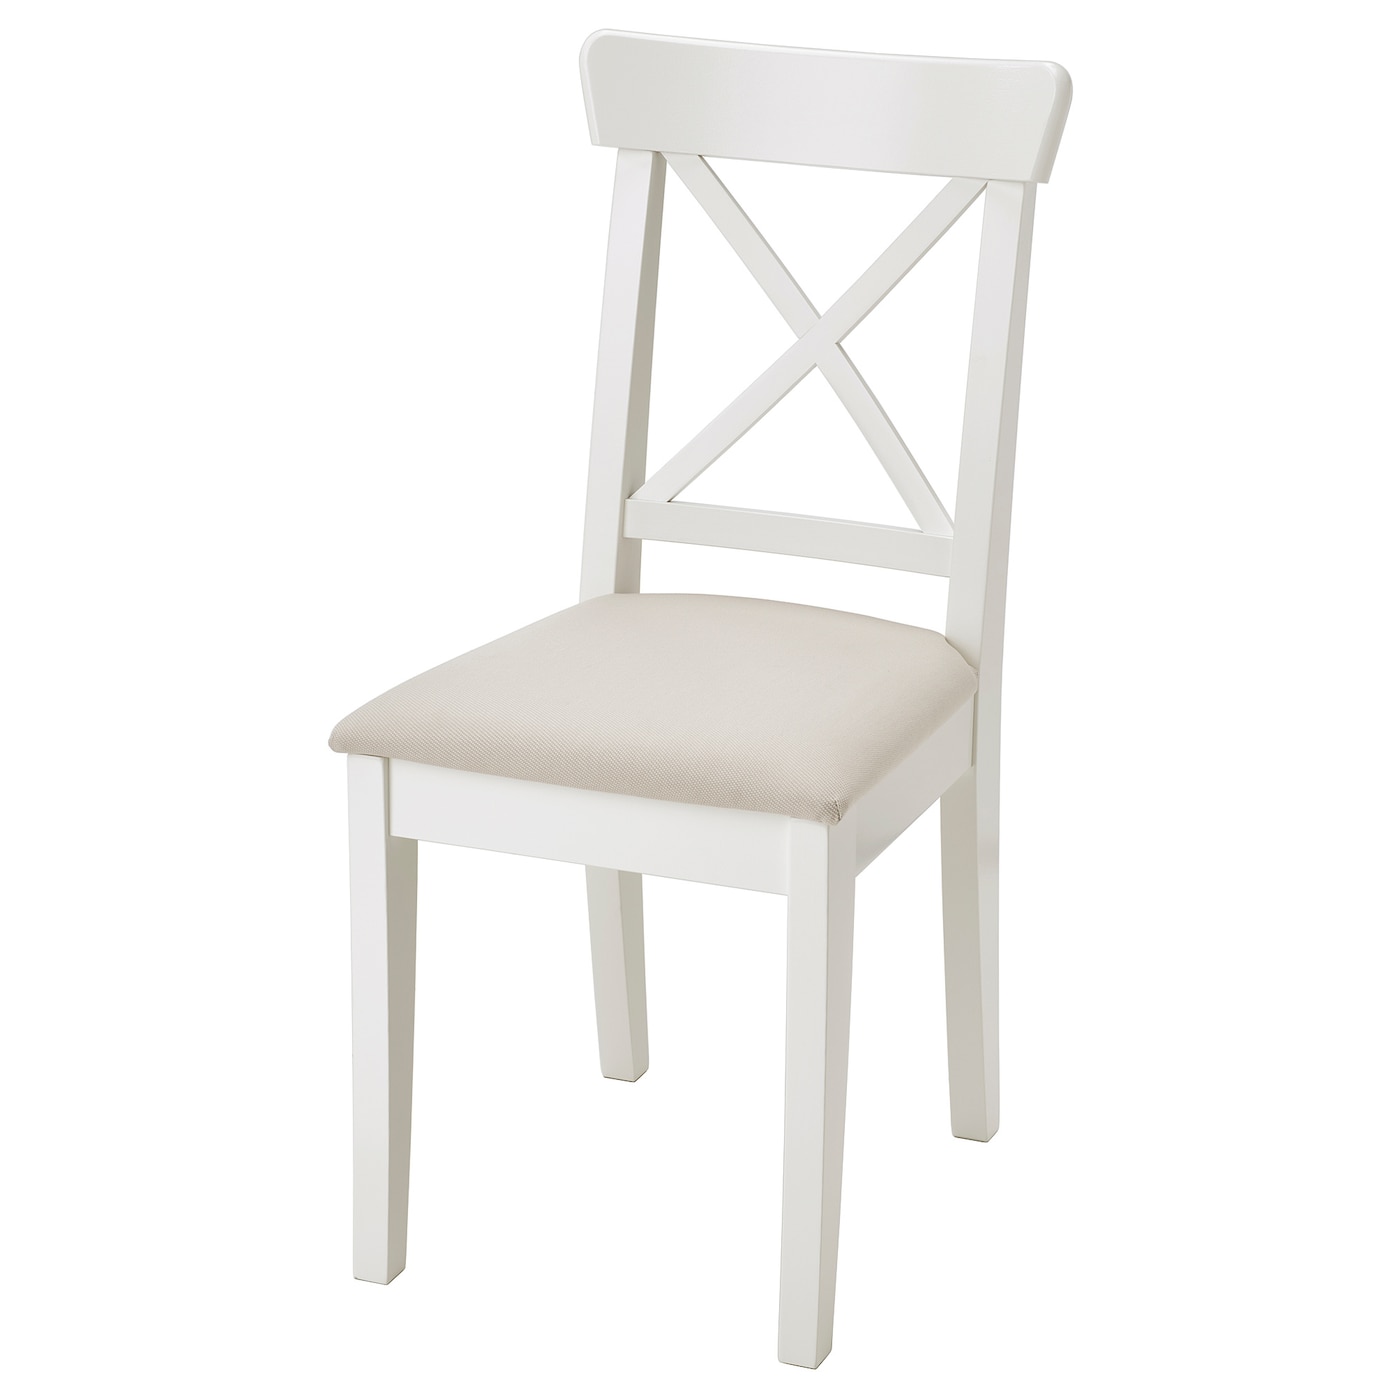 Купить стулья из коллекции Ikea в интернет-магазине в Санкт-Петербурге